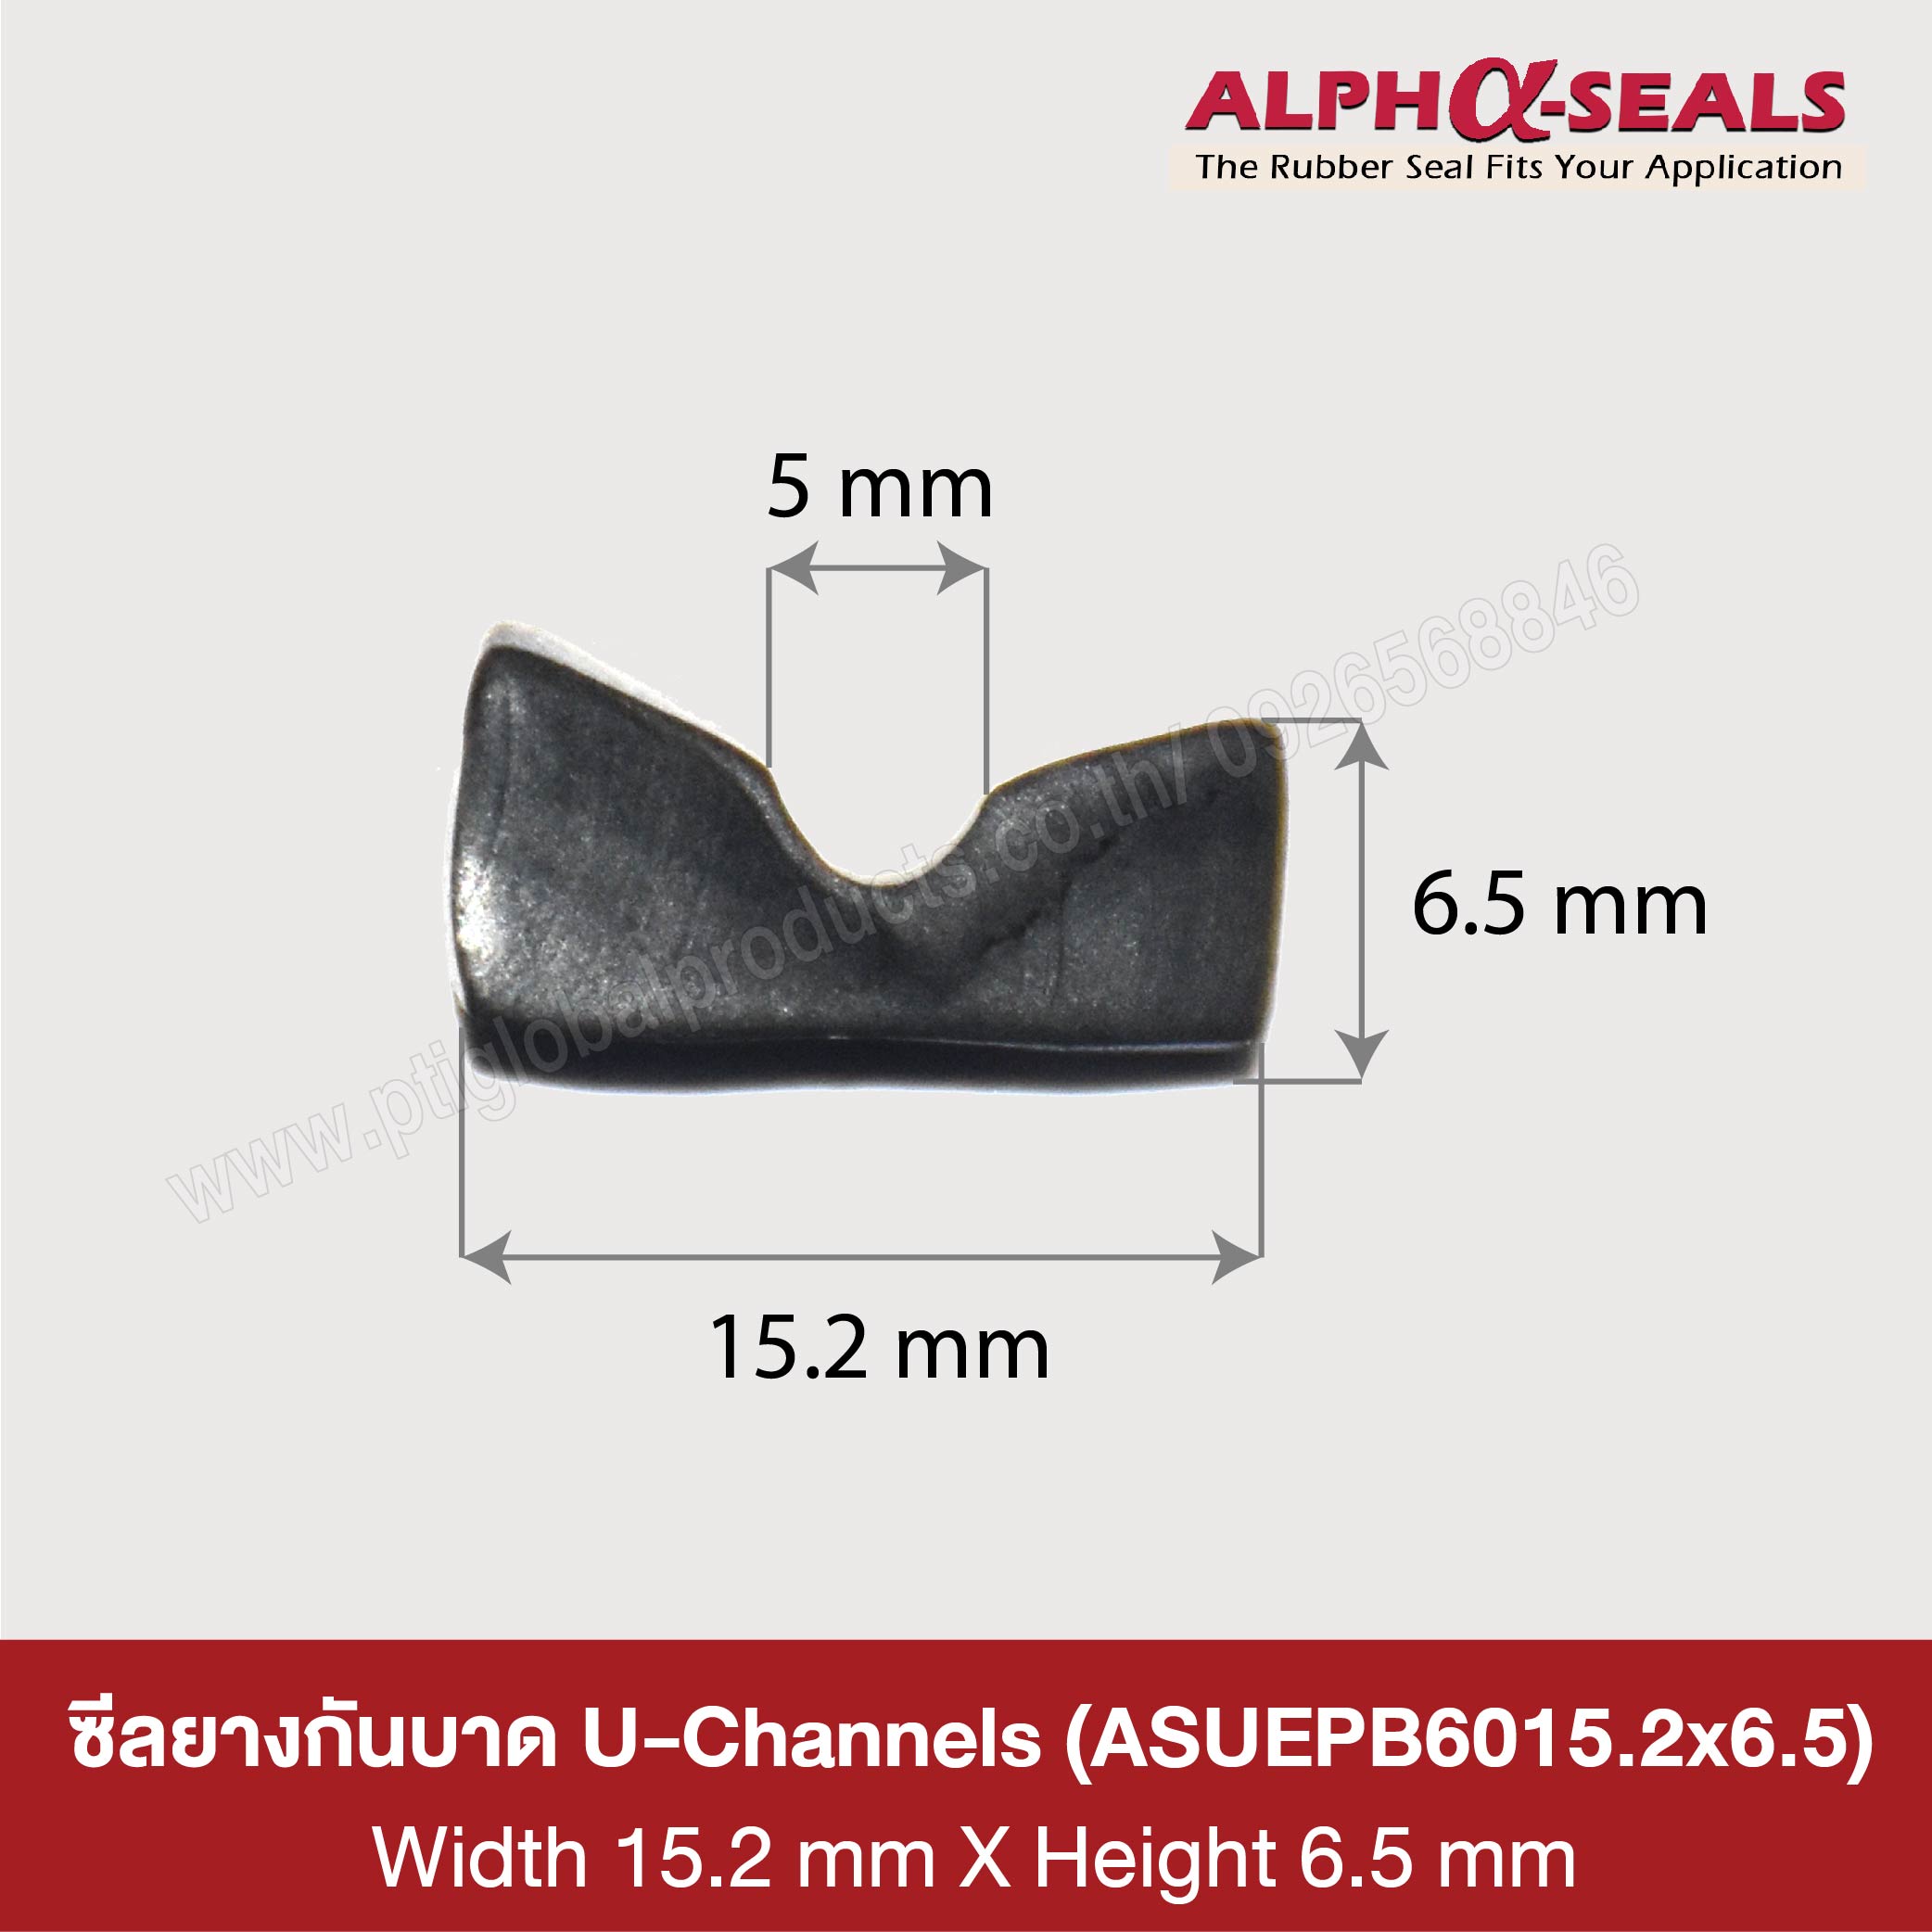 ซีลยางกันบาด U-Channels 15.2x6.5 mm 